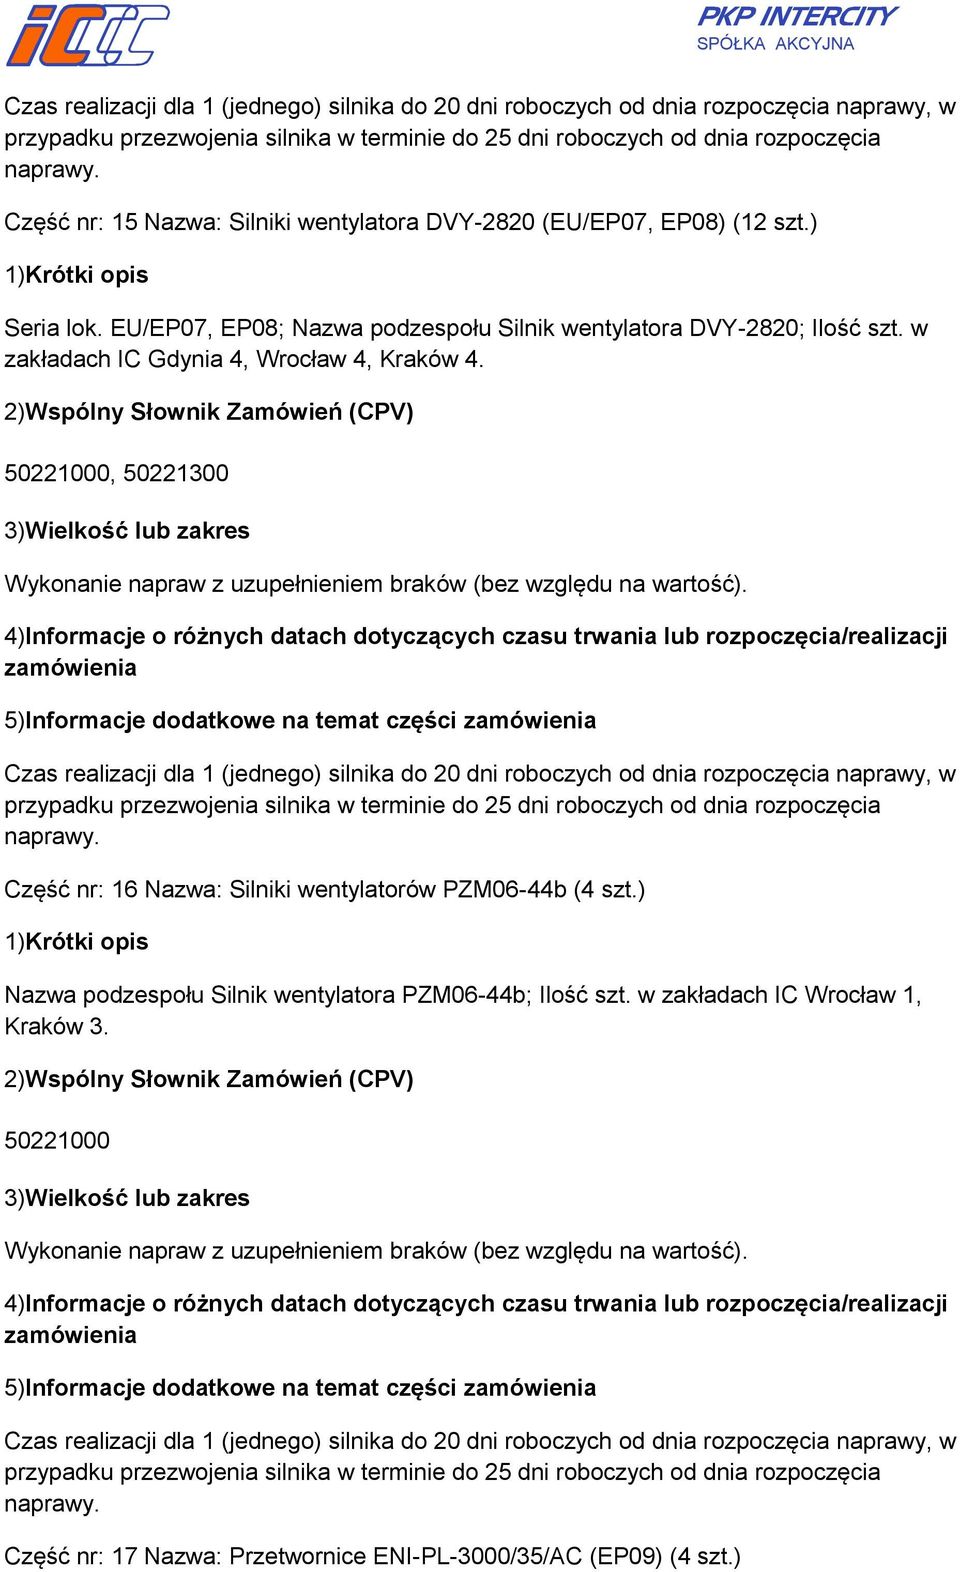 w zakładach IC Gdynia 4, Wrocław 4, Kraków 4., 50221300 Wykonanie napraw z uzupełnieniem braków (bez względu na wartość).